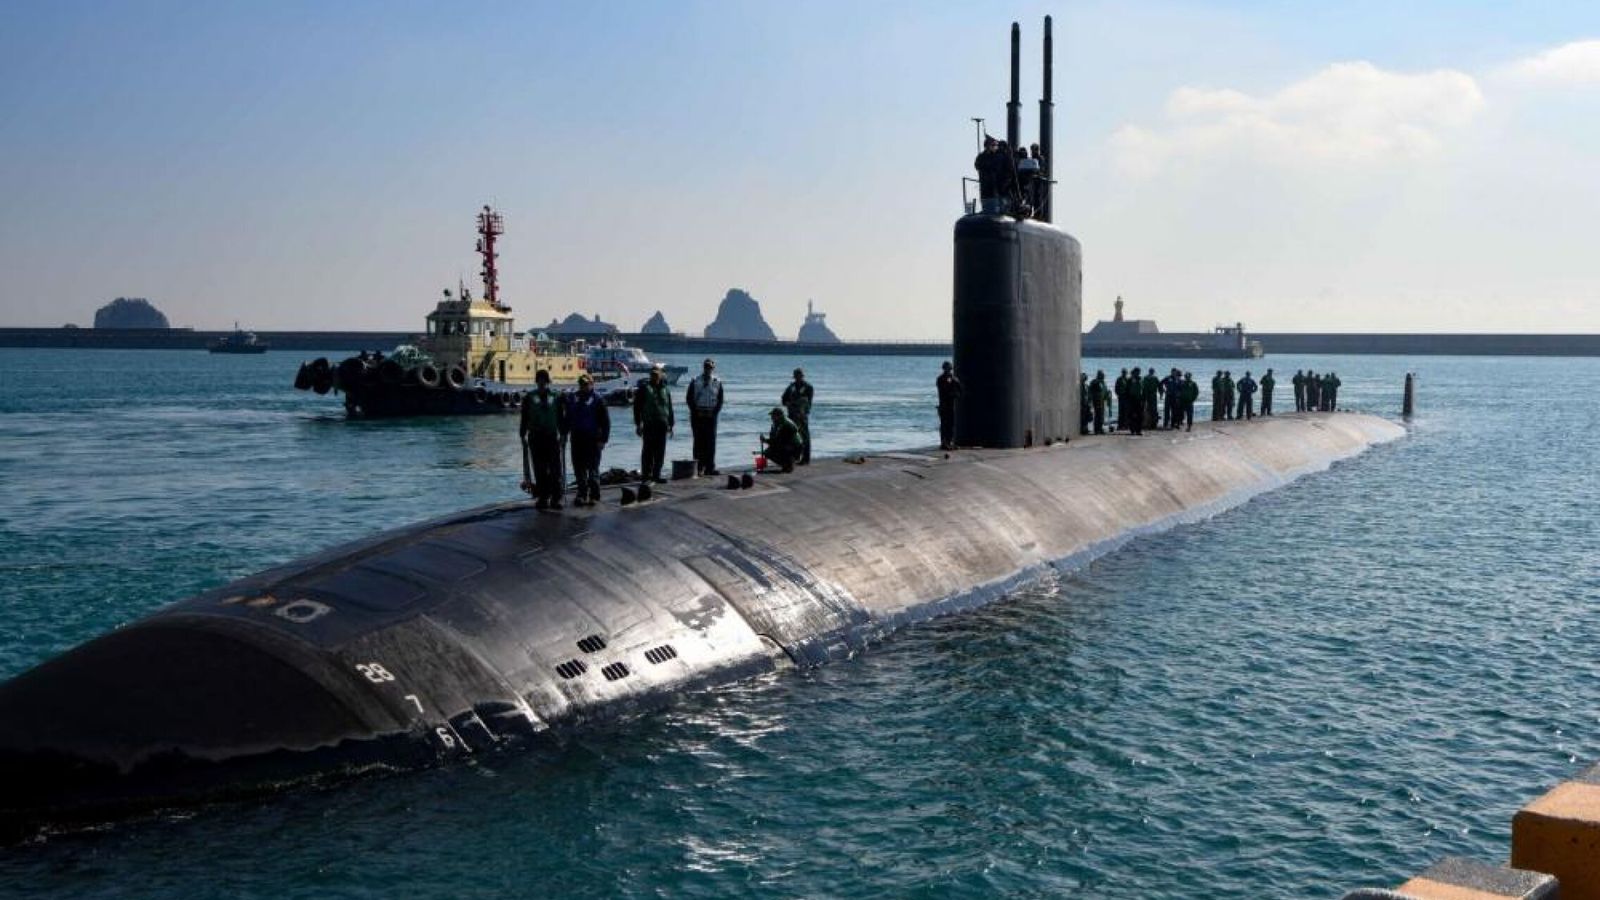 BUSAN (COREA DEL SUR), 27 02 2023.- El submarino USS Springfield, de 6.000 toneladas y propulsión nuclear, está desplazado desde el pasado día 23 en la base portuaria surcoreana de Busan, según anunció la Marina de Estados Unidos, en un momento de escalada de tensiones en la península de Corea. (EFE/MARINA DE EEUU)